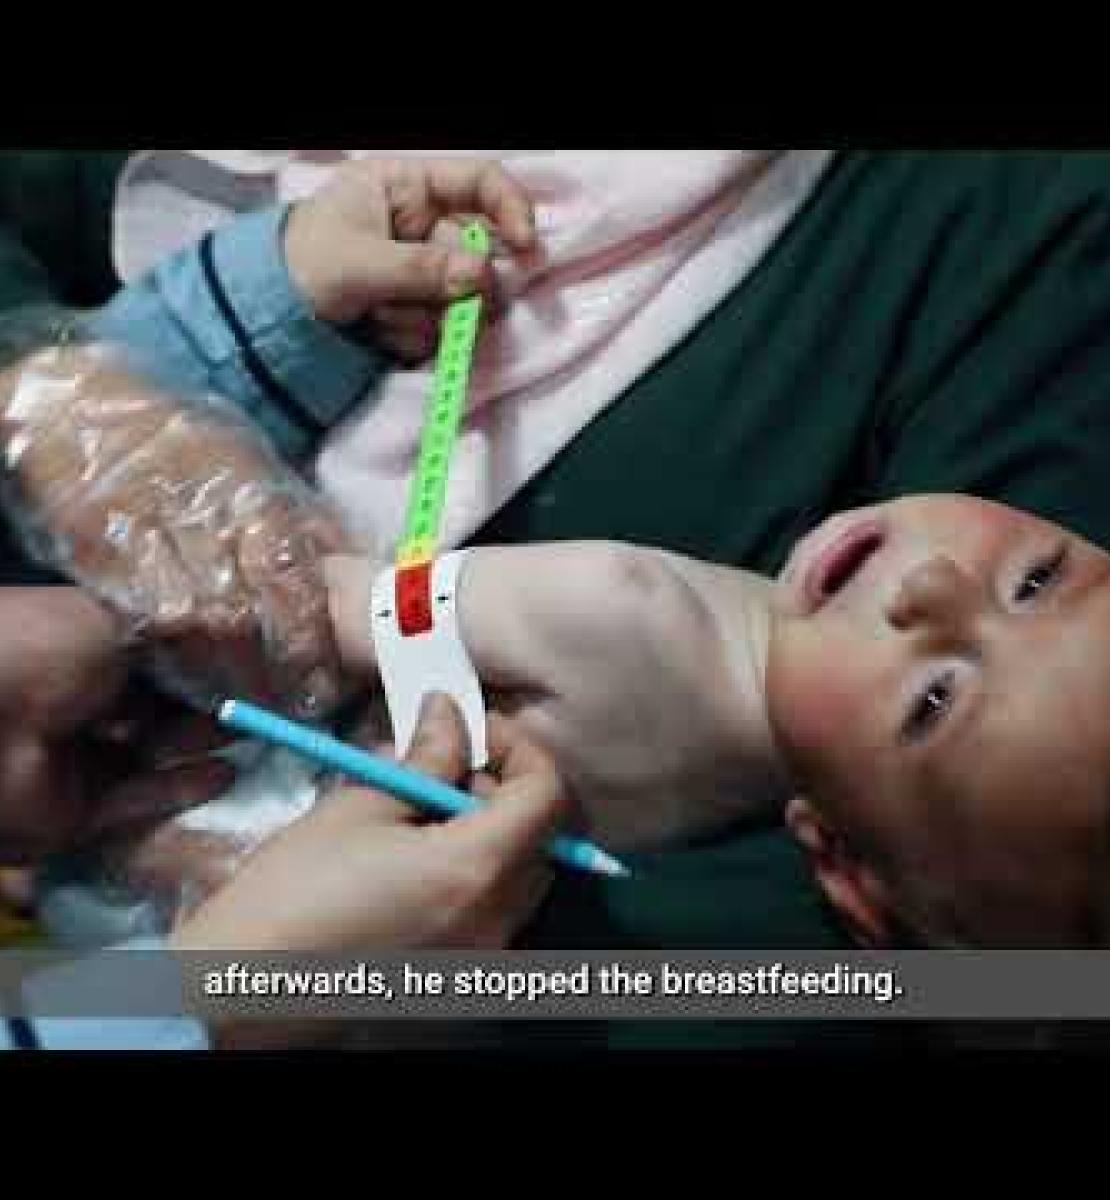 Des efforts concertés pour sauver les enfants souffrant de malnutrition dans le nord-est de la Syrie 